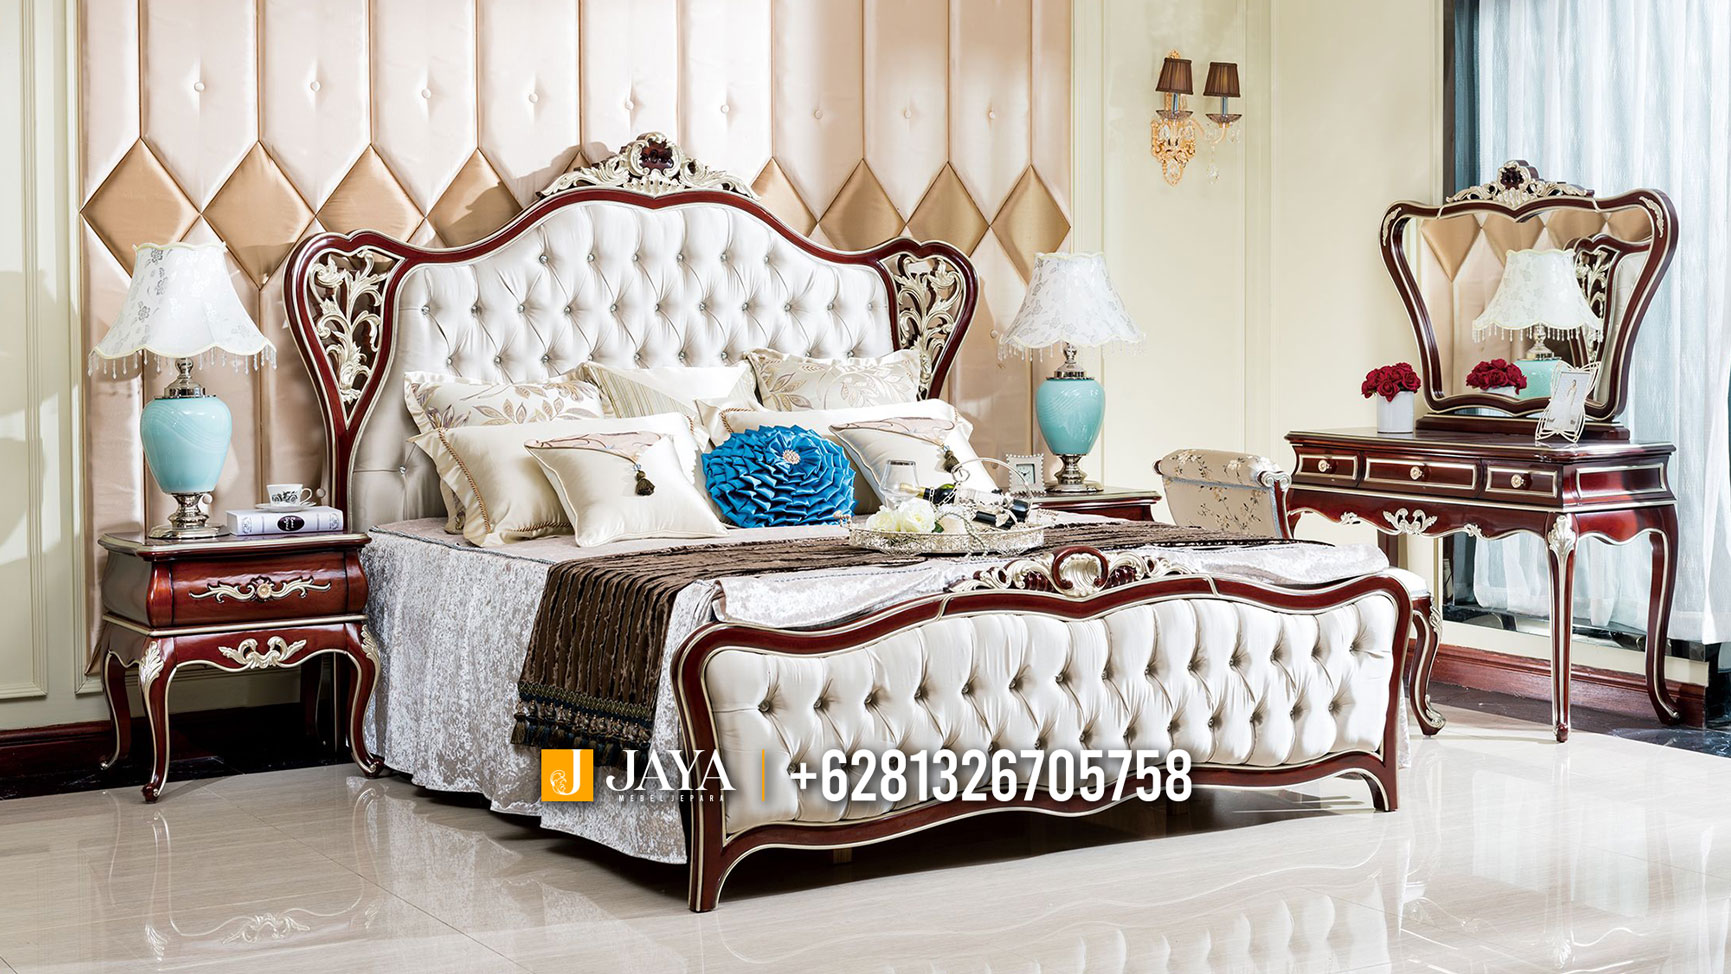 Harga Set Tempat Tidur Mewah Dipan Jati Klasik Luxury Carving Jepara JM140